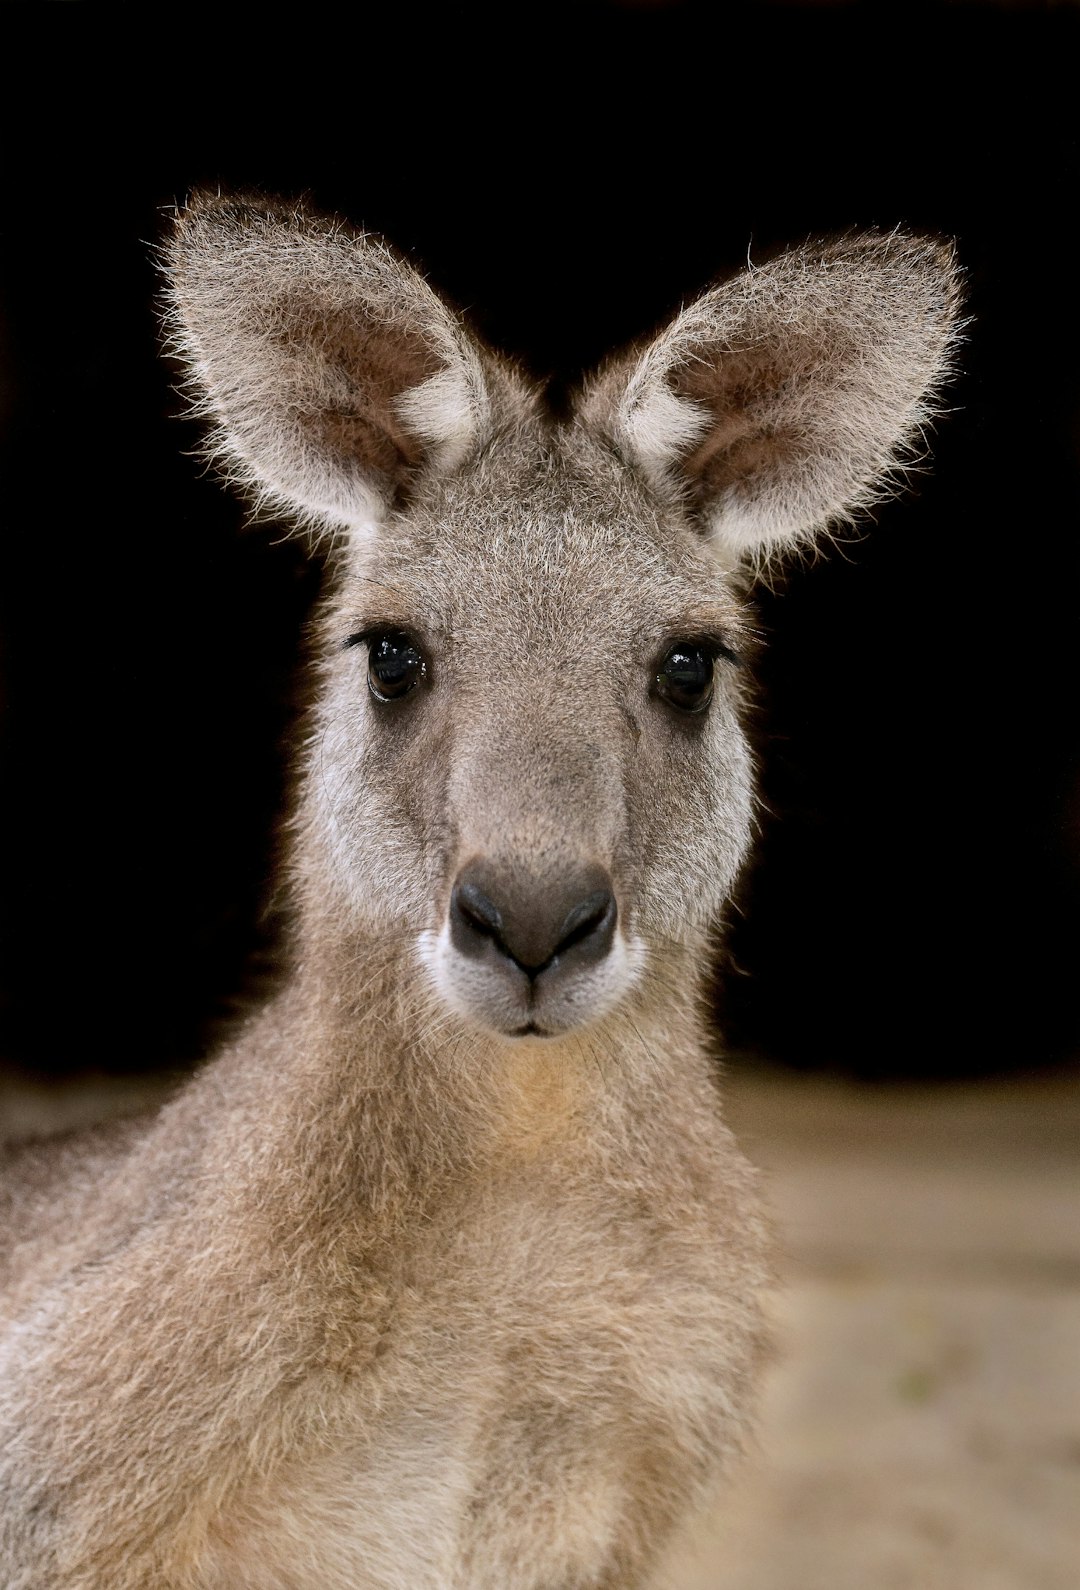  brown kangaroo in black background kangaroo